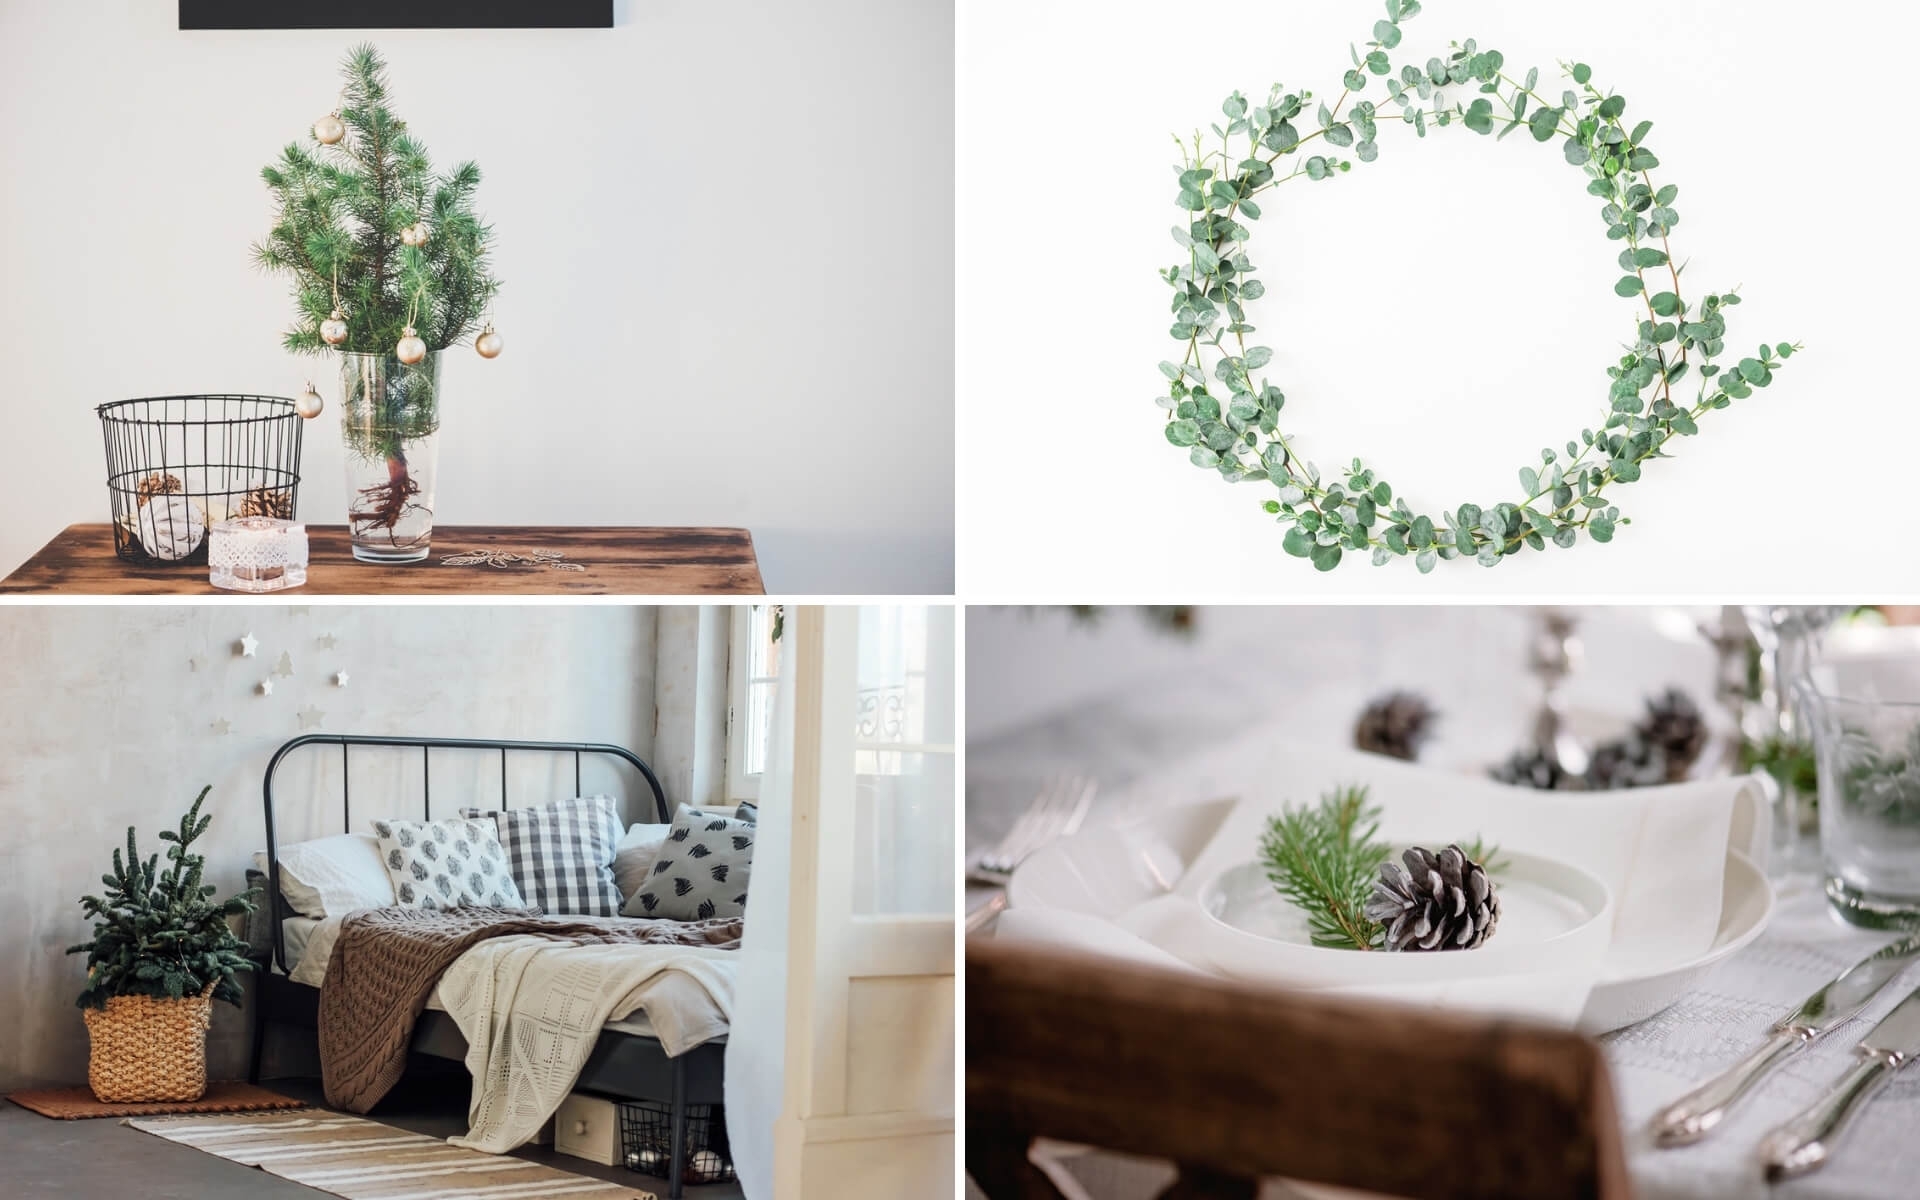 Suggerimenti per arredare la casa a Natale in stile minimal